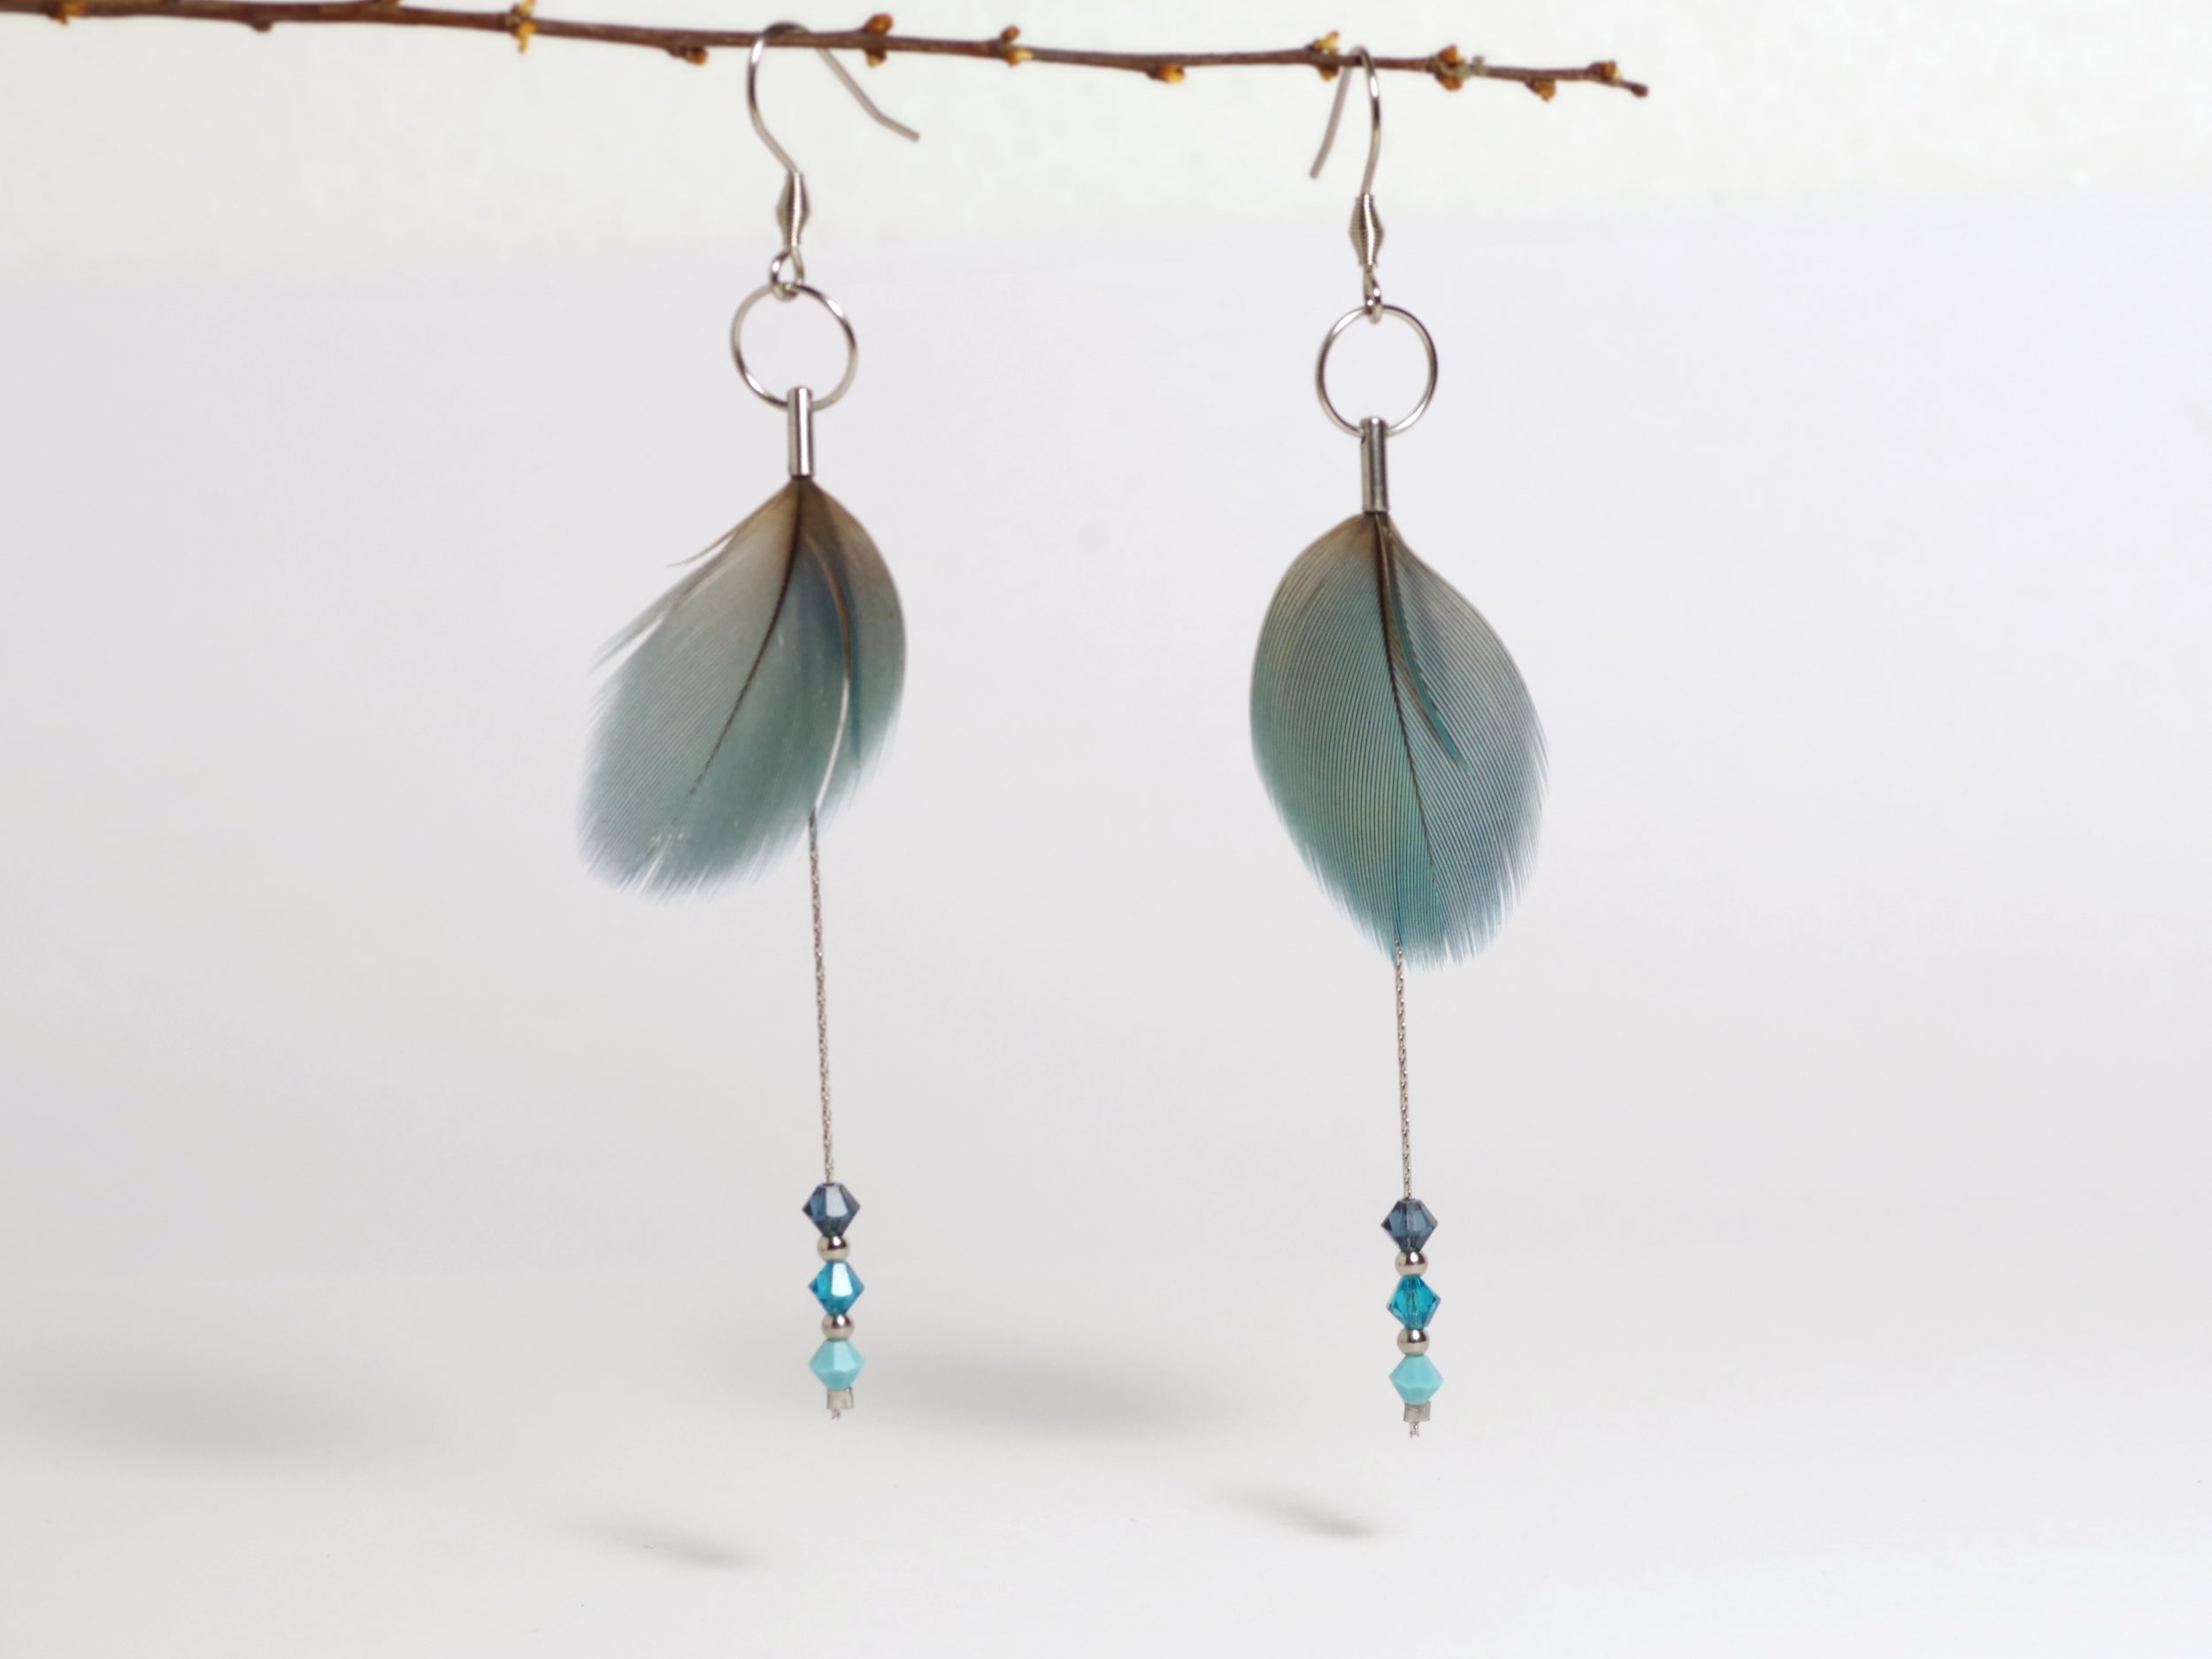 Boucles d'oreilles en plumes bleues et chaînes inox avec des petites perles facettées assorties.